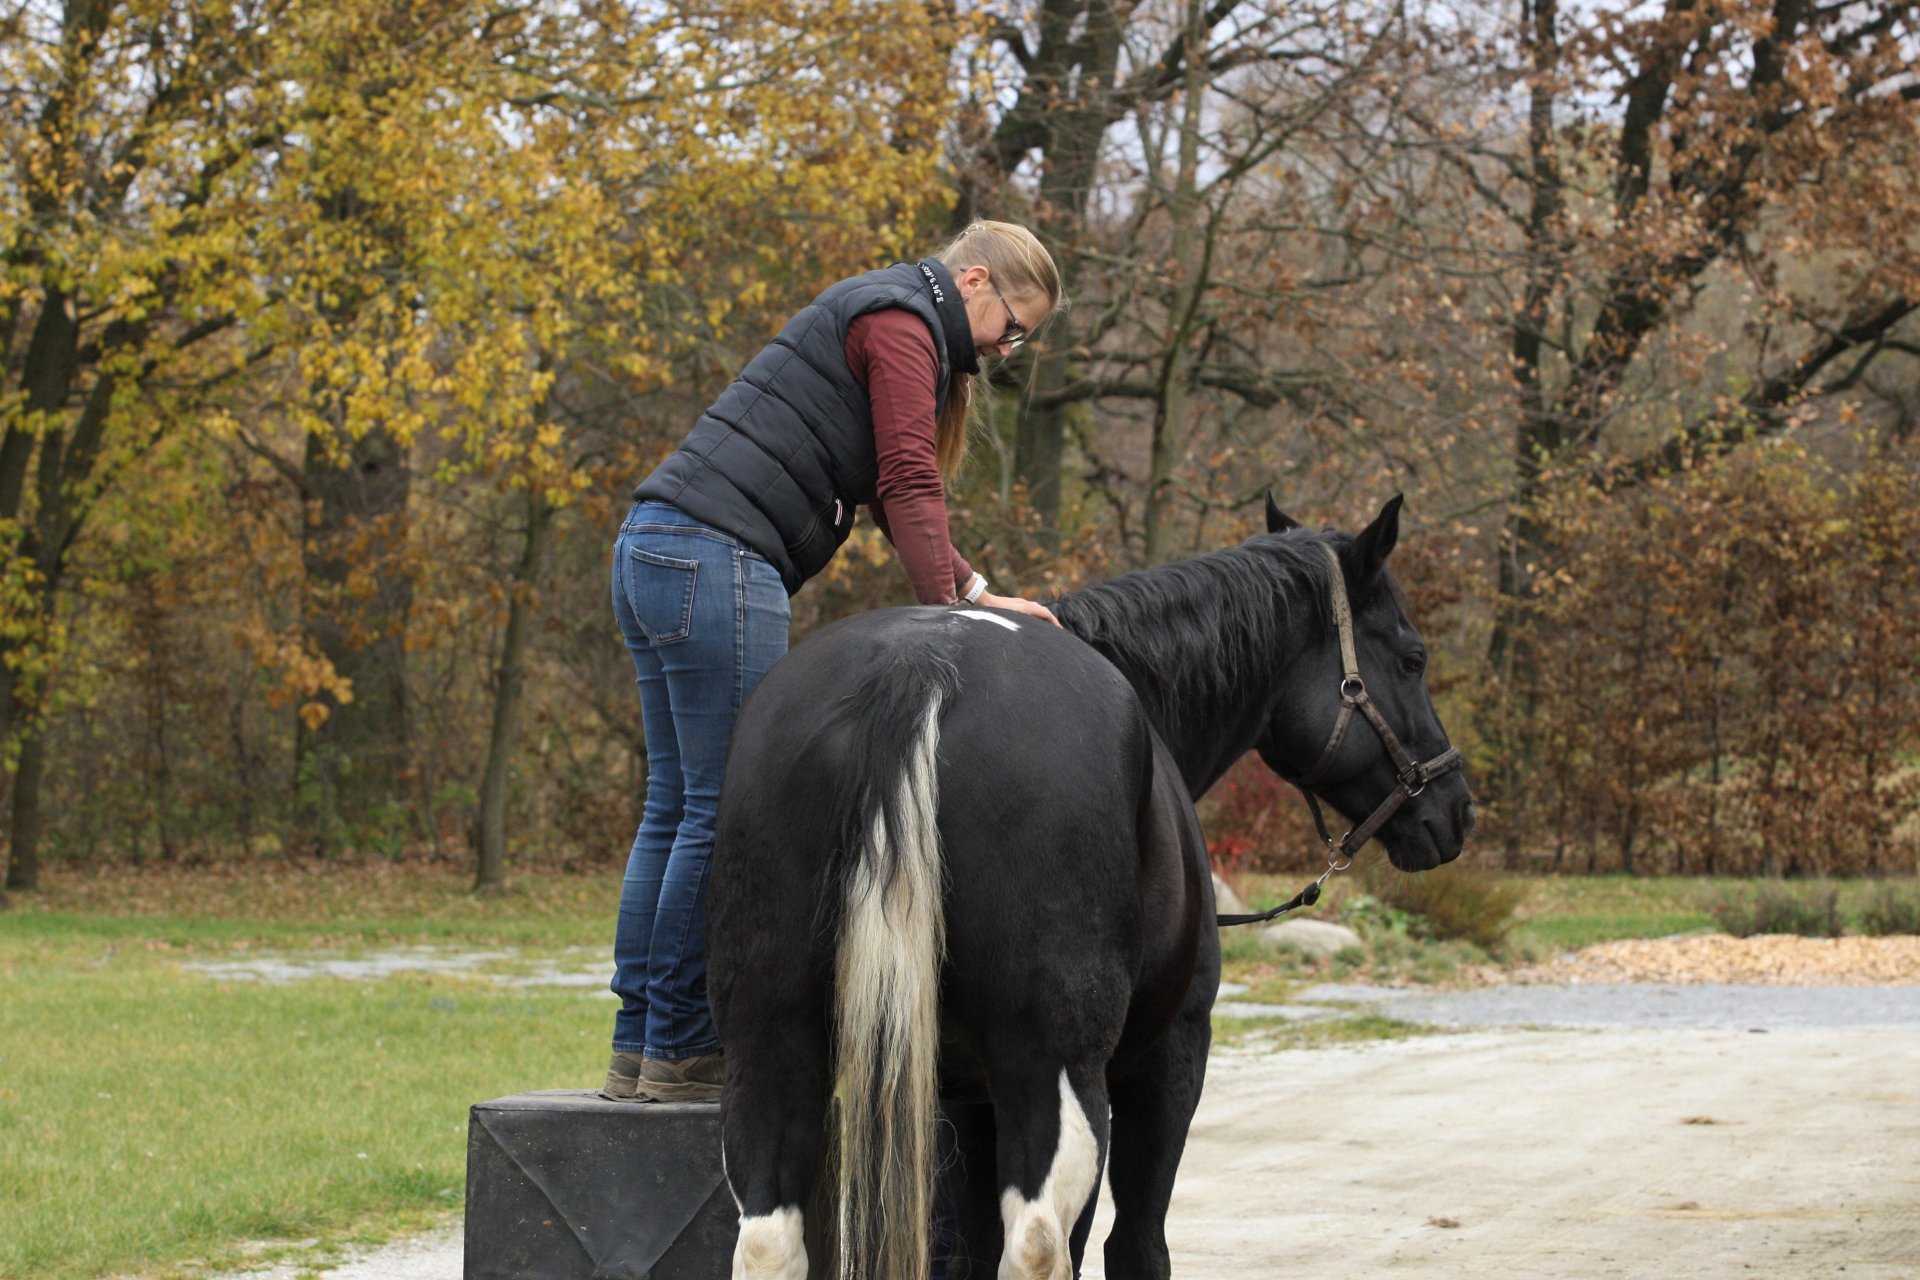 Je dobré nechat koně pravidelně kontrolovat chiropraktikem a/nebo fyzioterapeutem